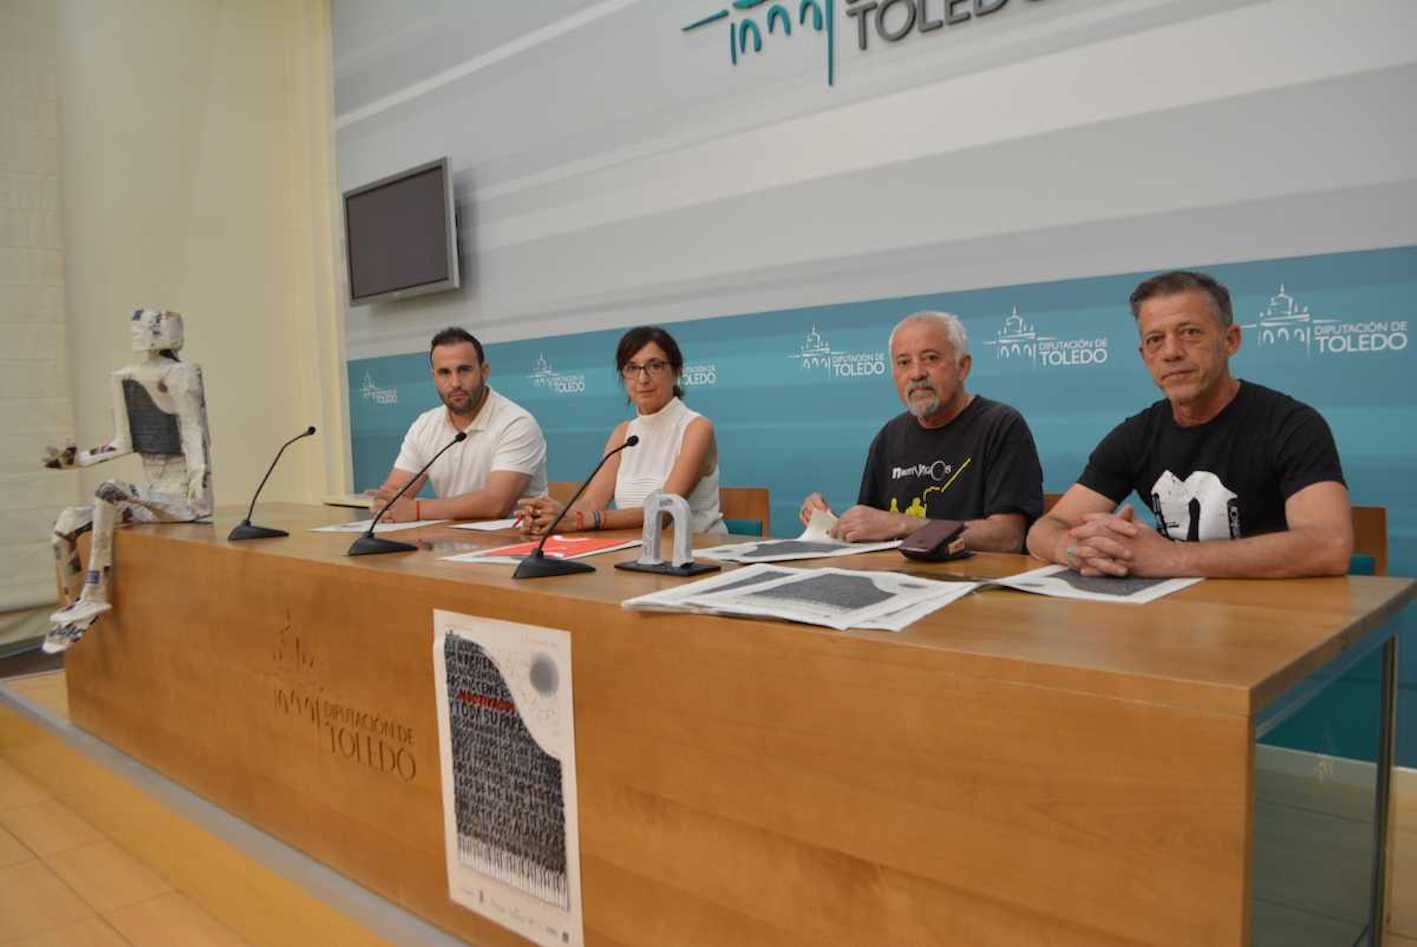 Presentación de "Noctívagos" en la Diputación de Toledo.